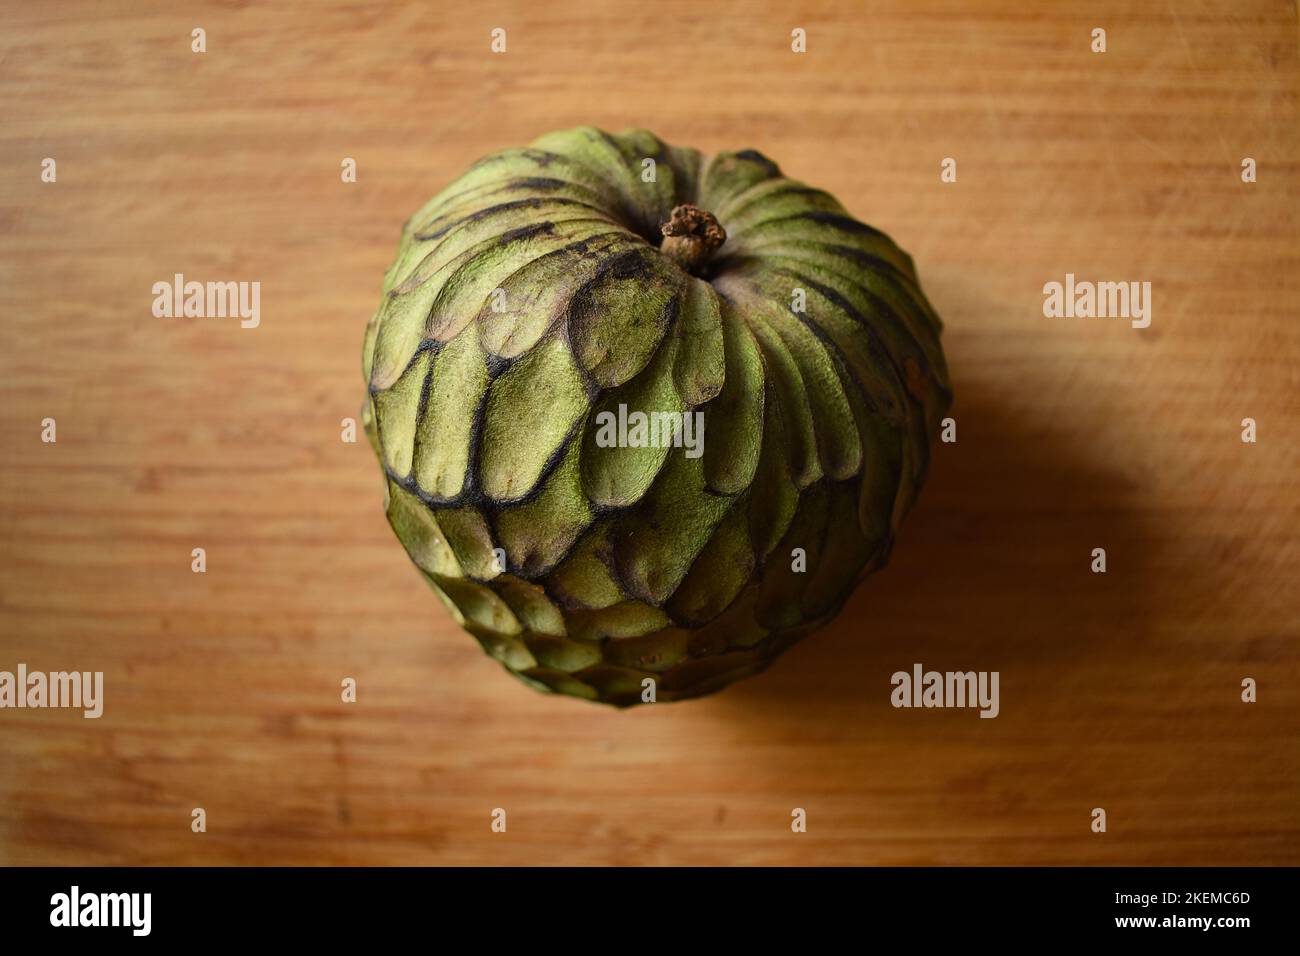 Custard apple on a chopping board Stock Photo